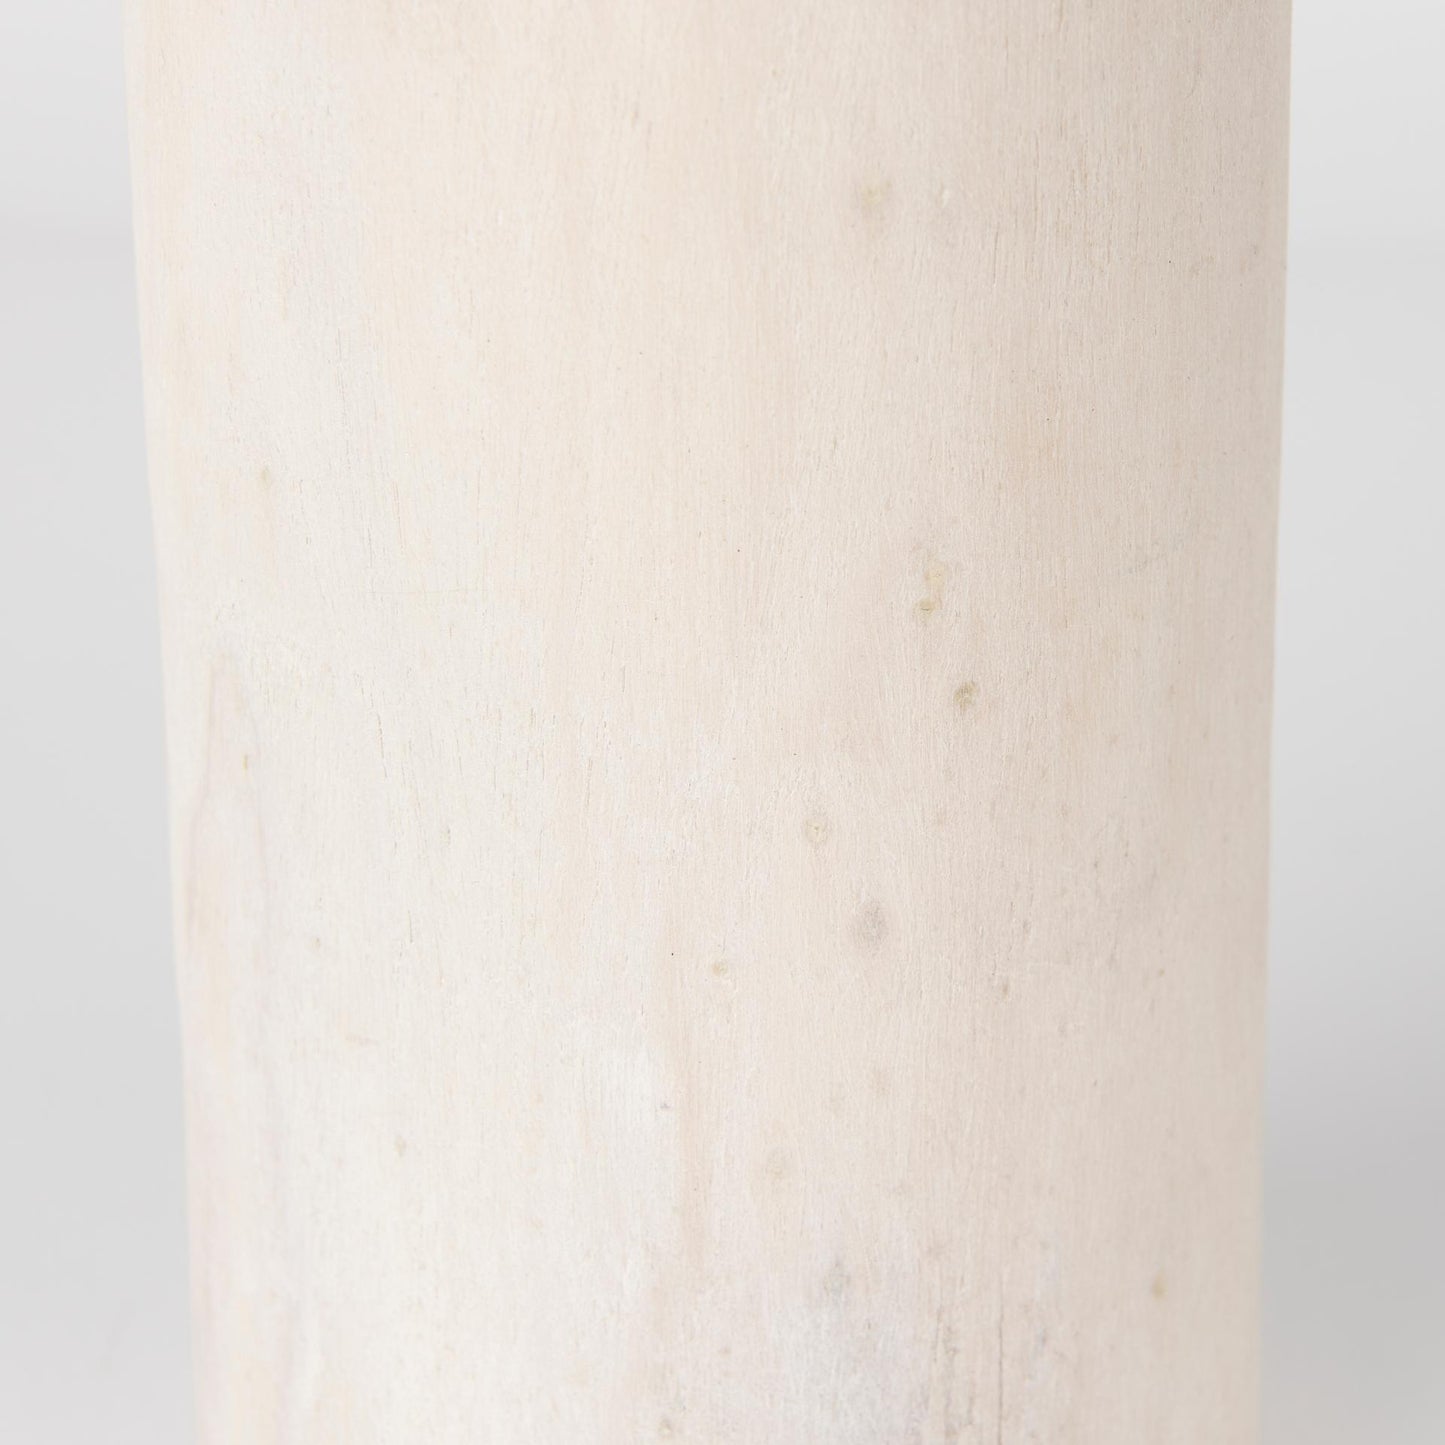 Knox Medium White-Wash Wood Decorative Object